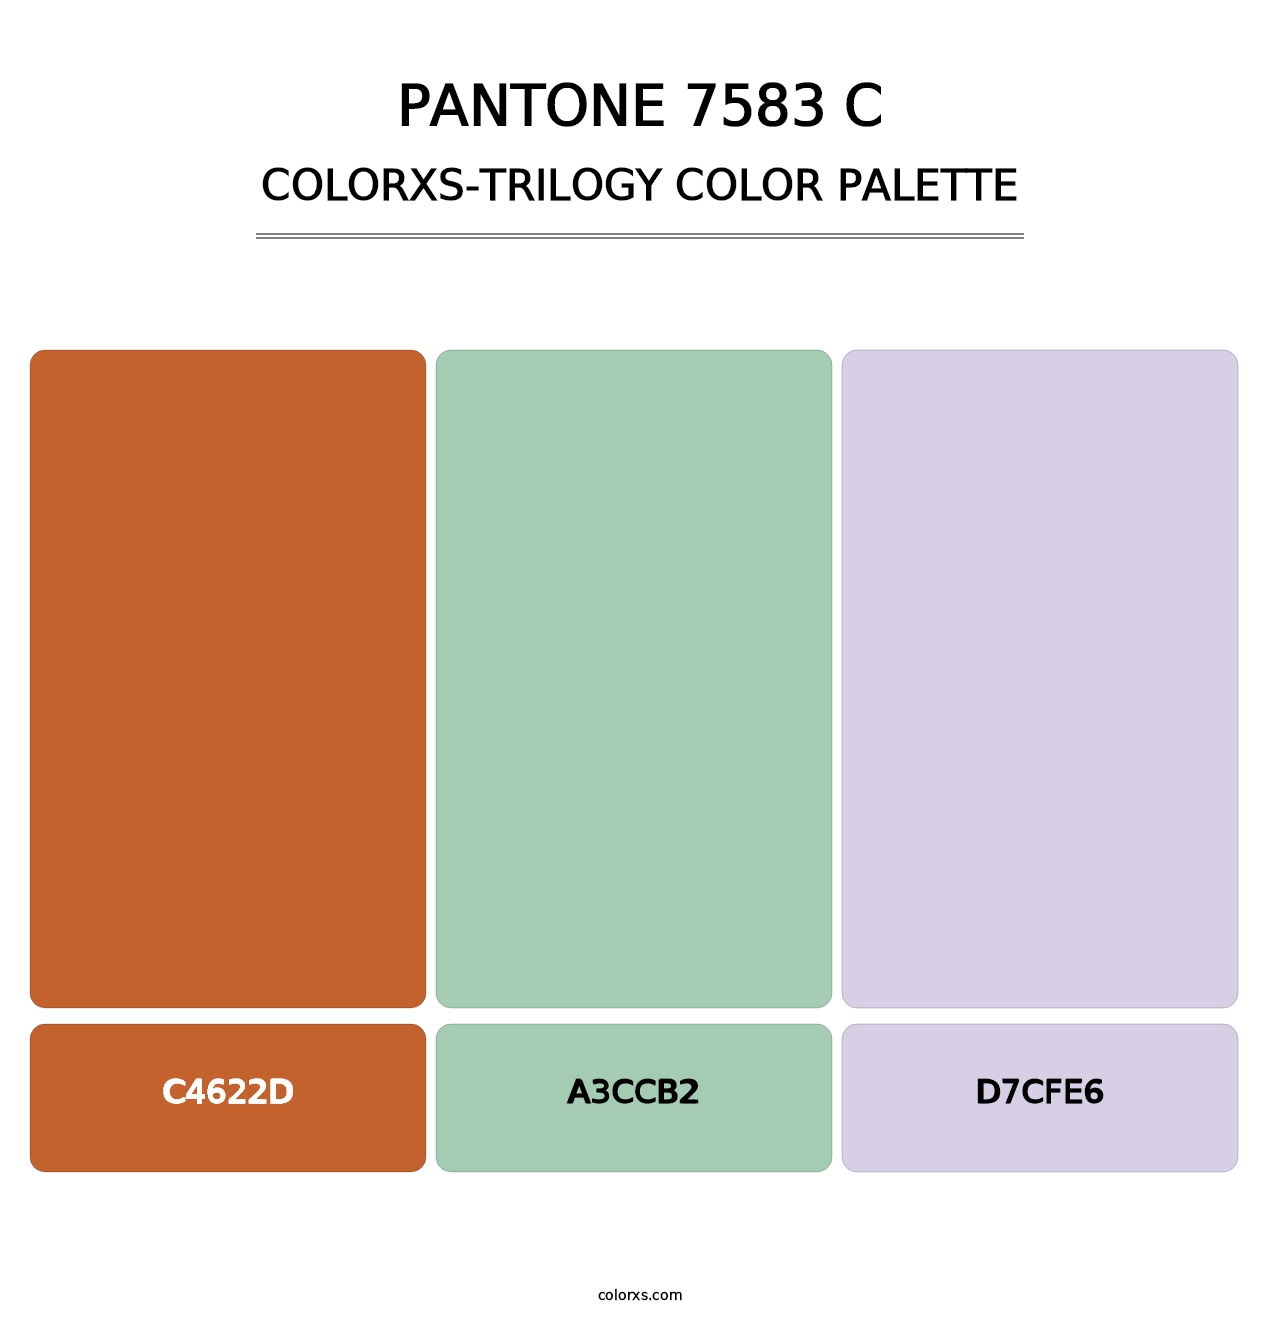 PANTONE 7583 C - Colorxs Trilogy Palette